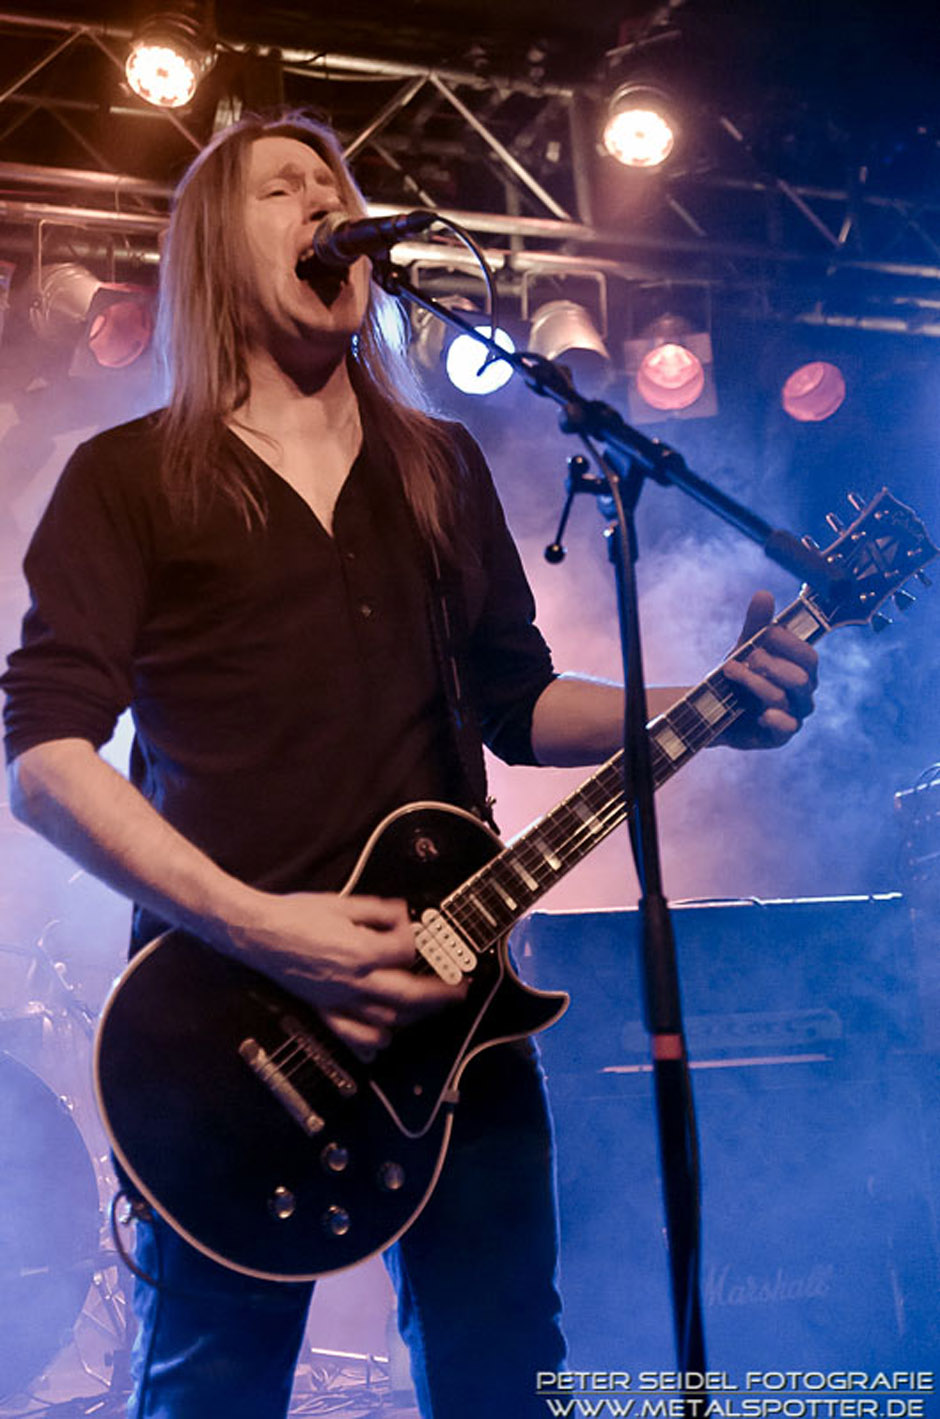 Angelwitch live, 14.02.2013, München